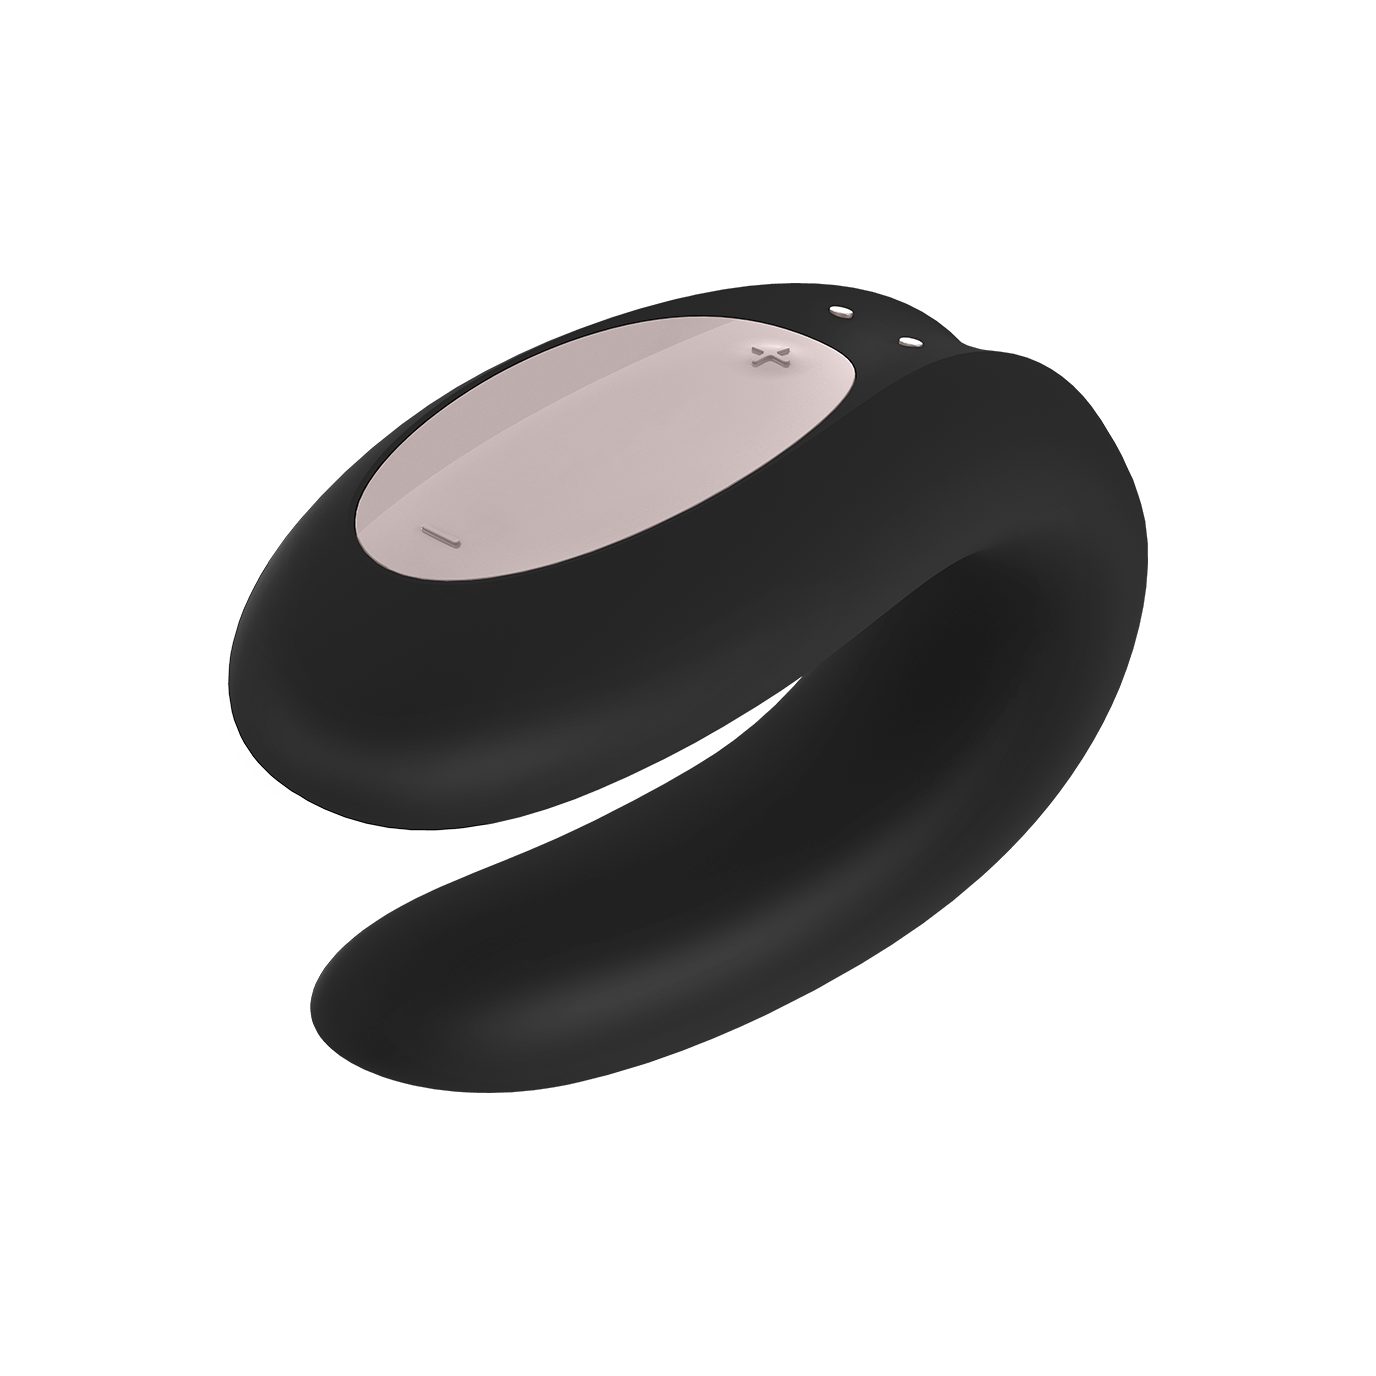 App", Paar-Vibrator Bluetooth, 9cm Satisfyer Connect "Double Satisfyer Joy Paarvibrator,